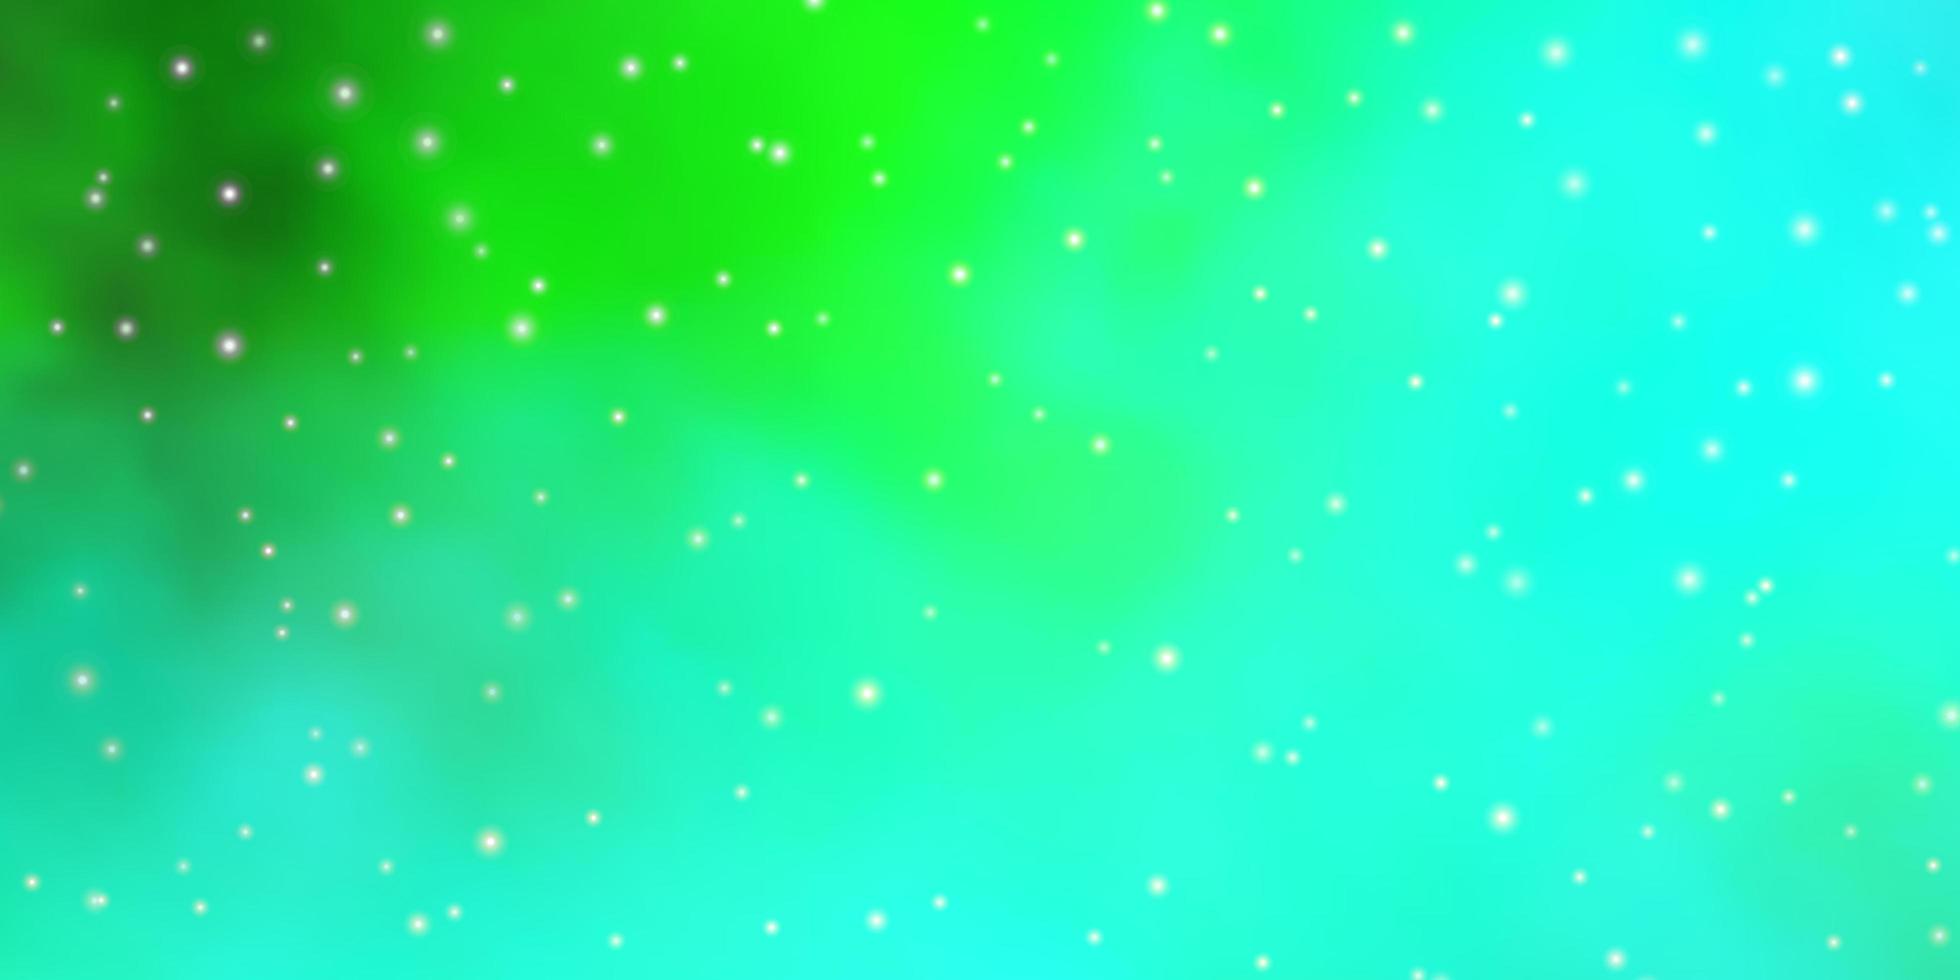 hellgrüner Vektorhintergrund mit kleinen und großen Sternen. vektor